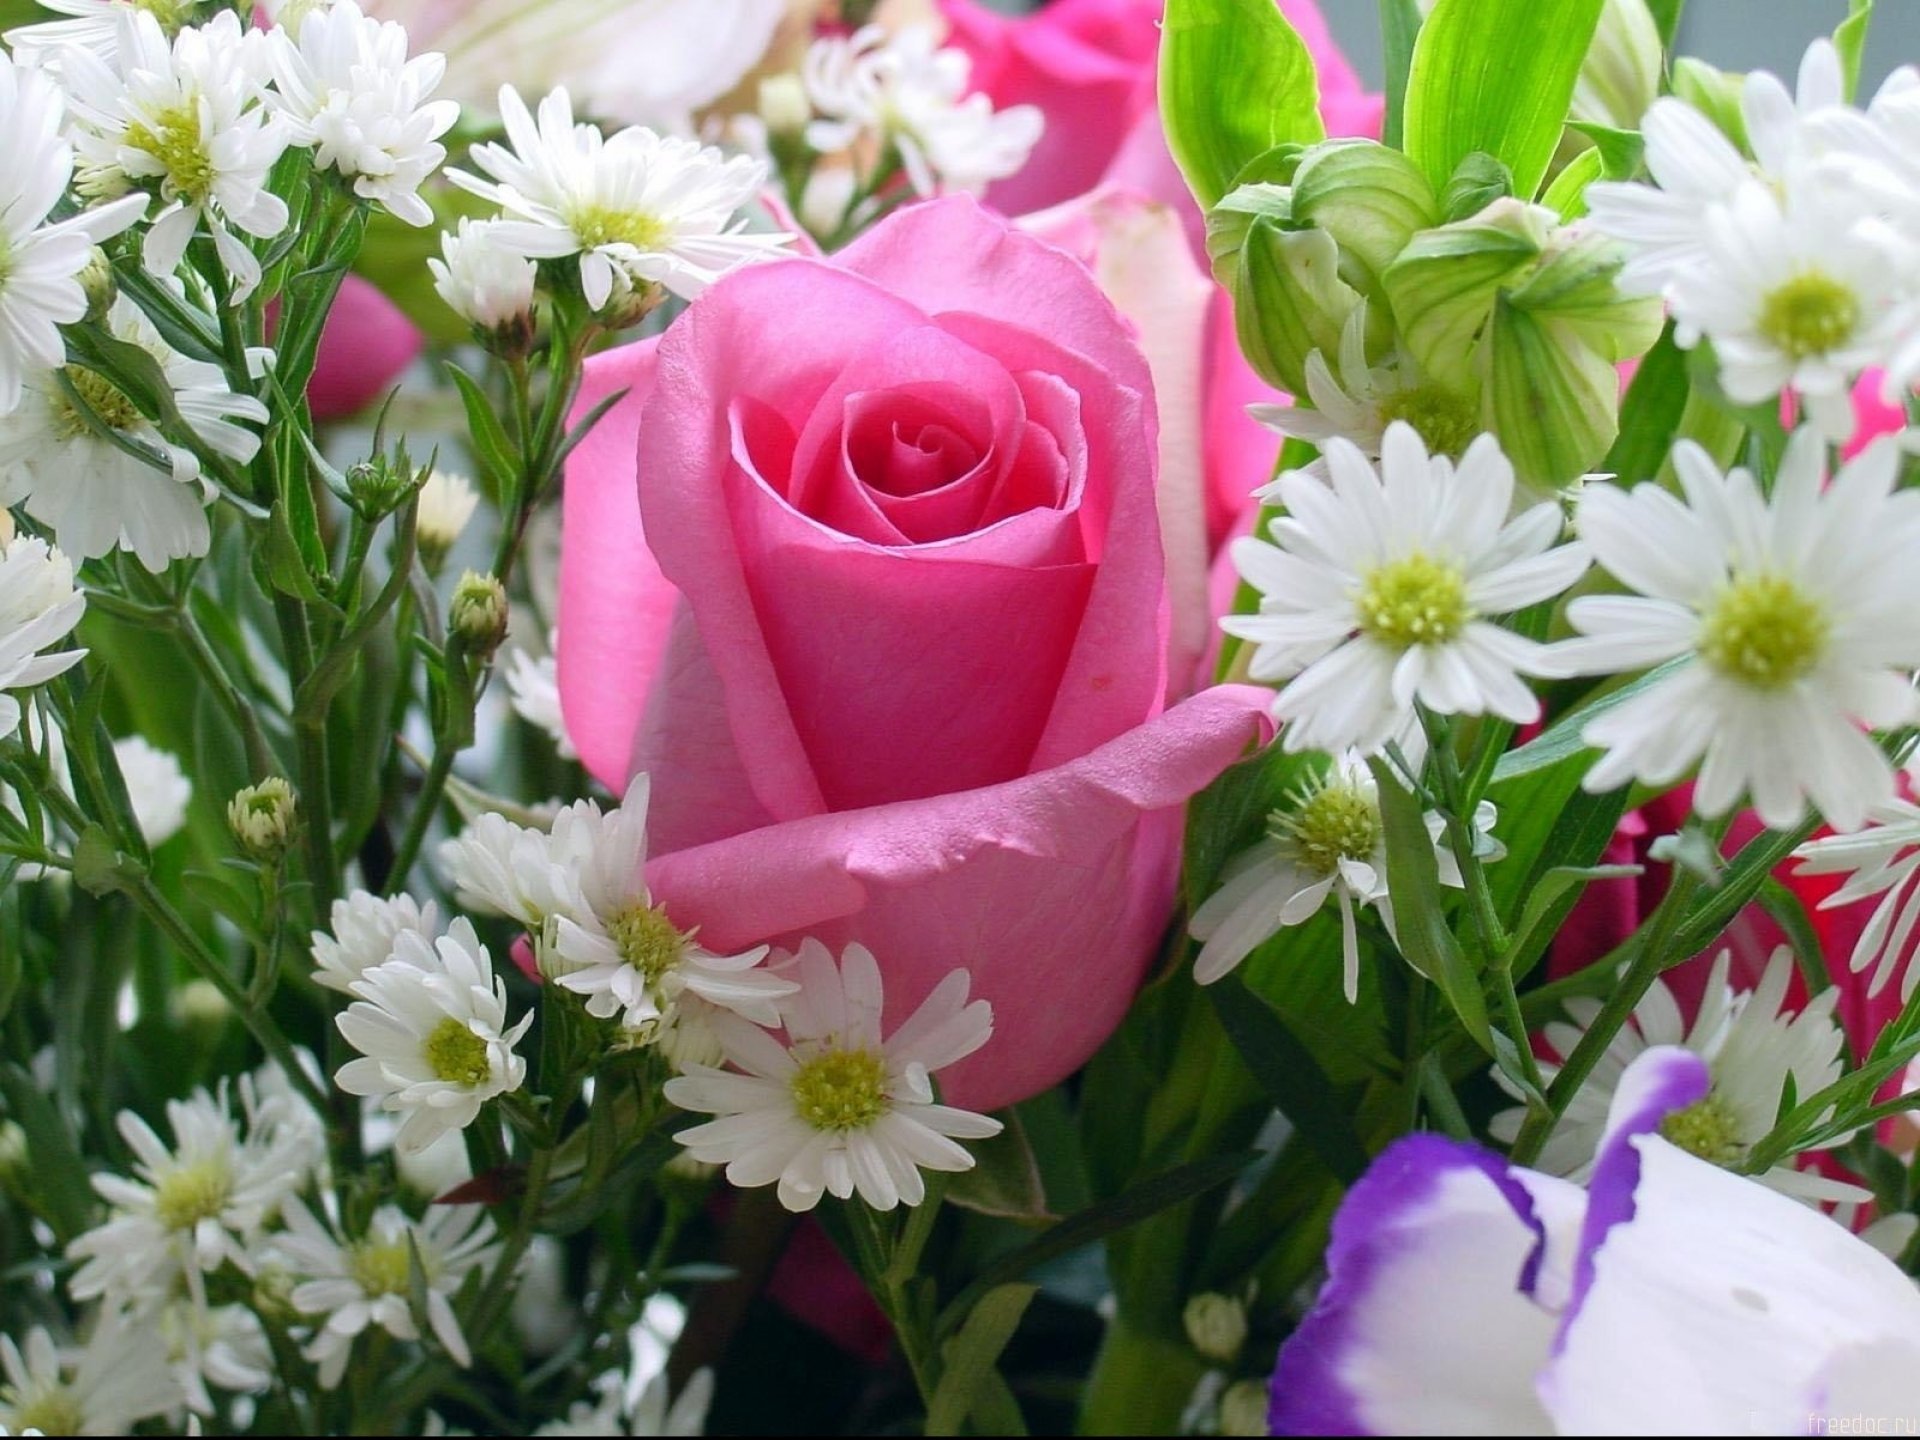 Доставка цветов в Москве | Заказать букет цветов с бесплатной доставкой